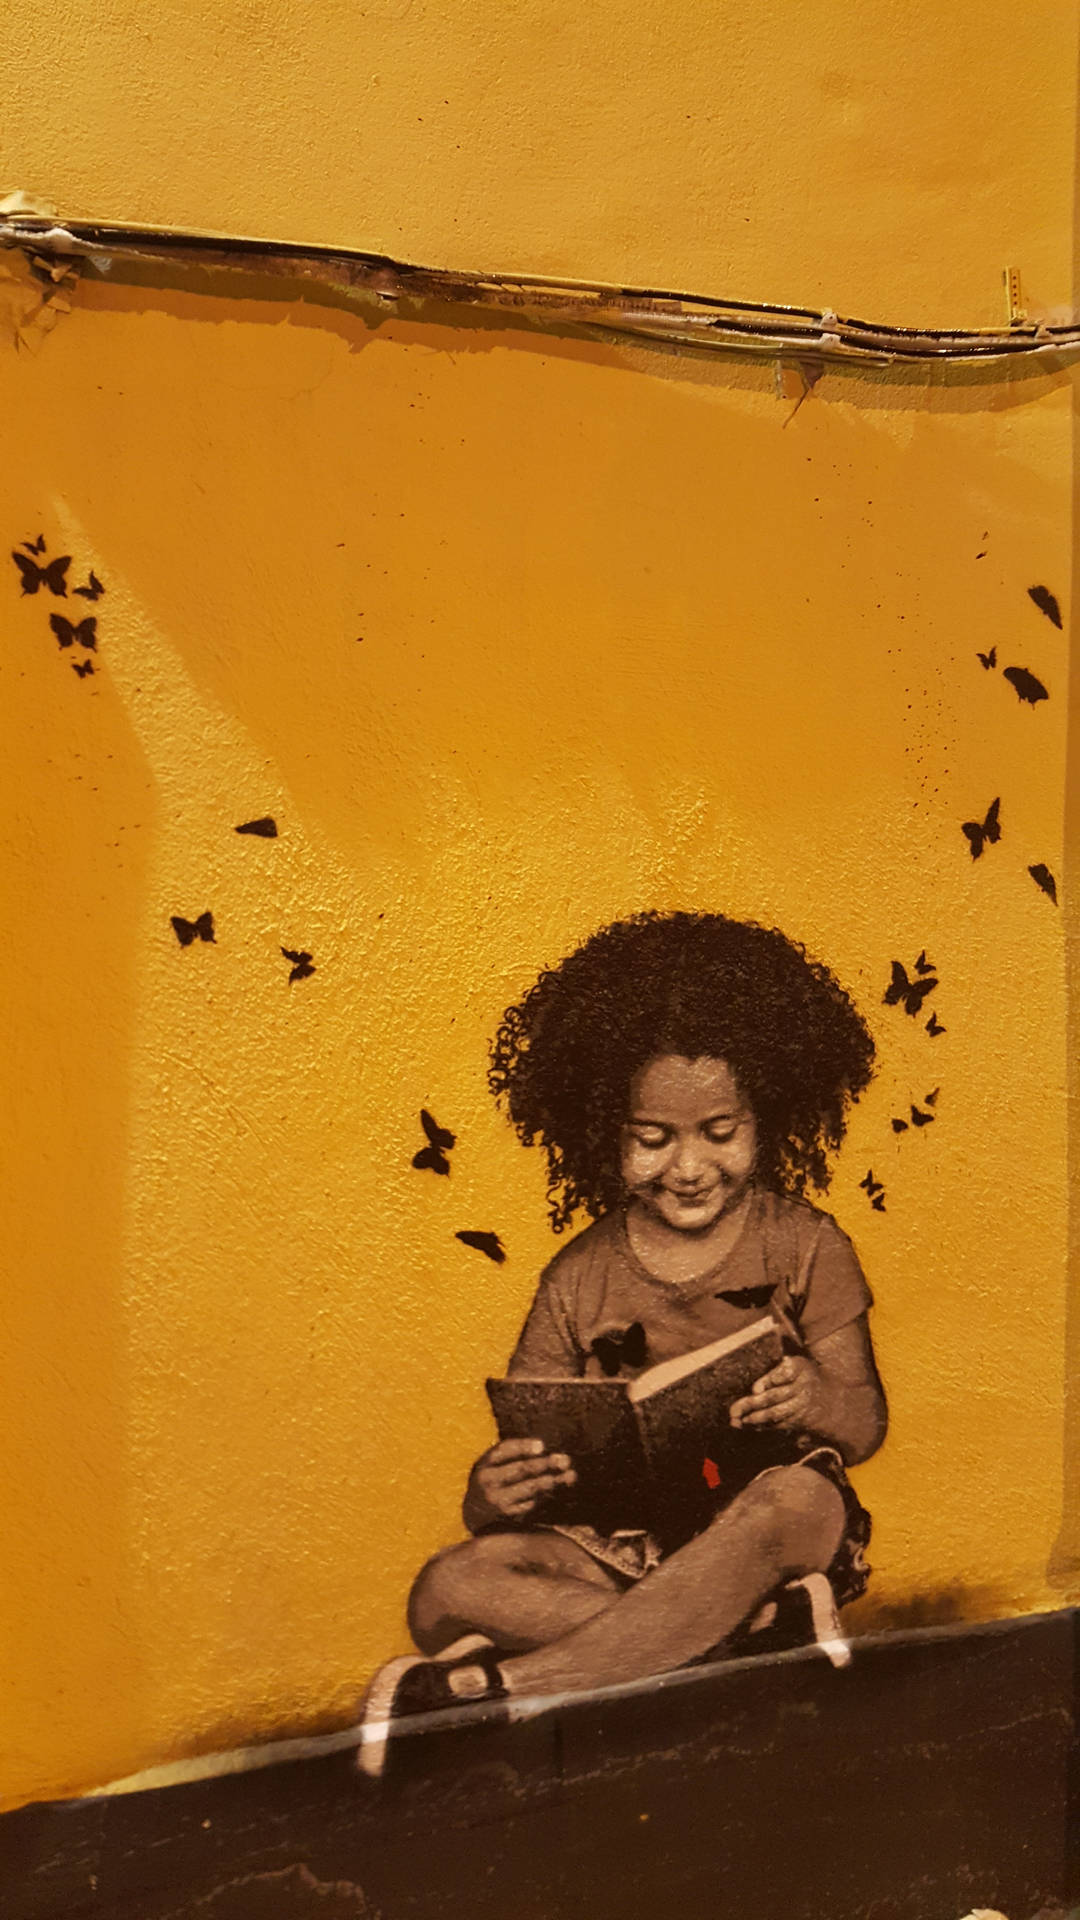 Bookworm Kid Graffiti